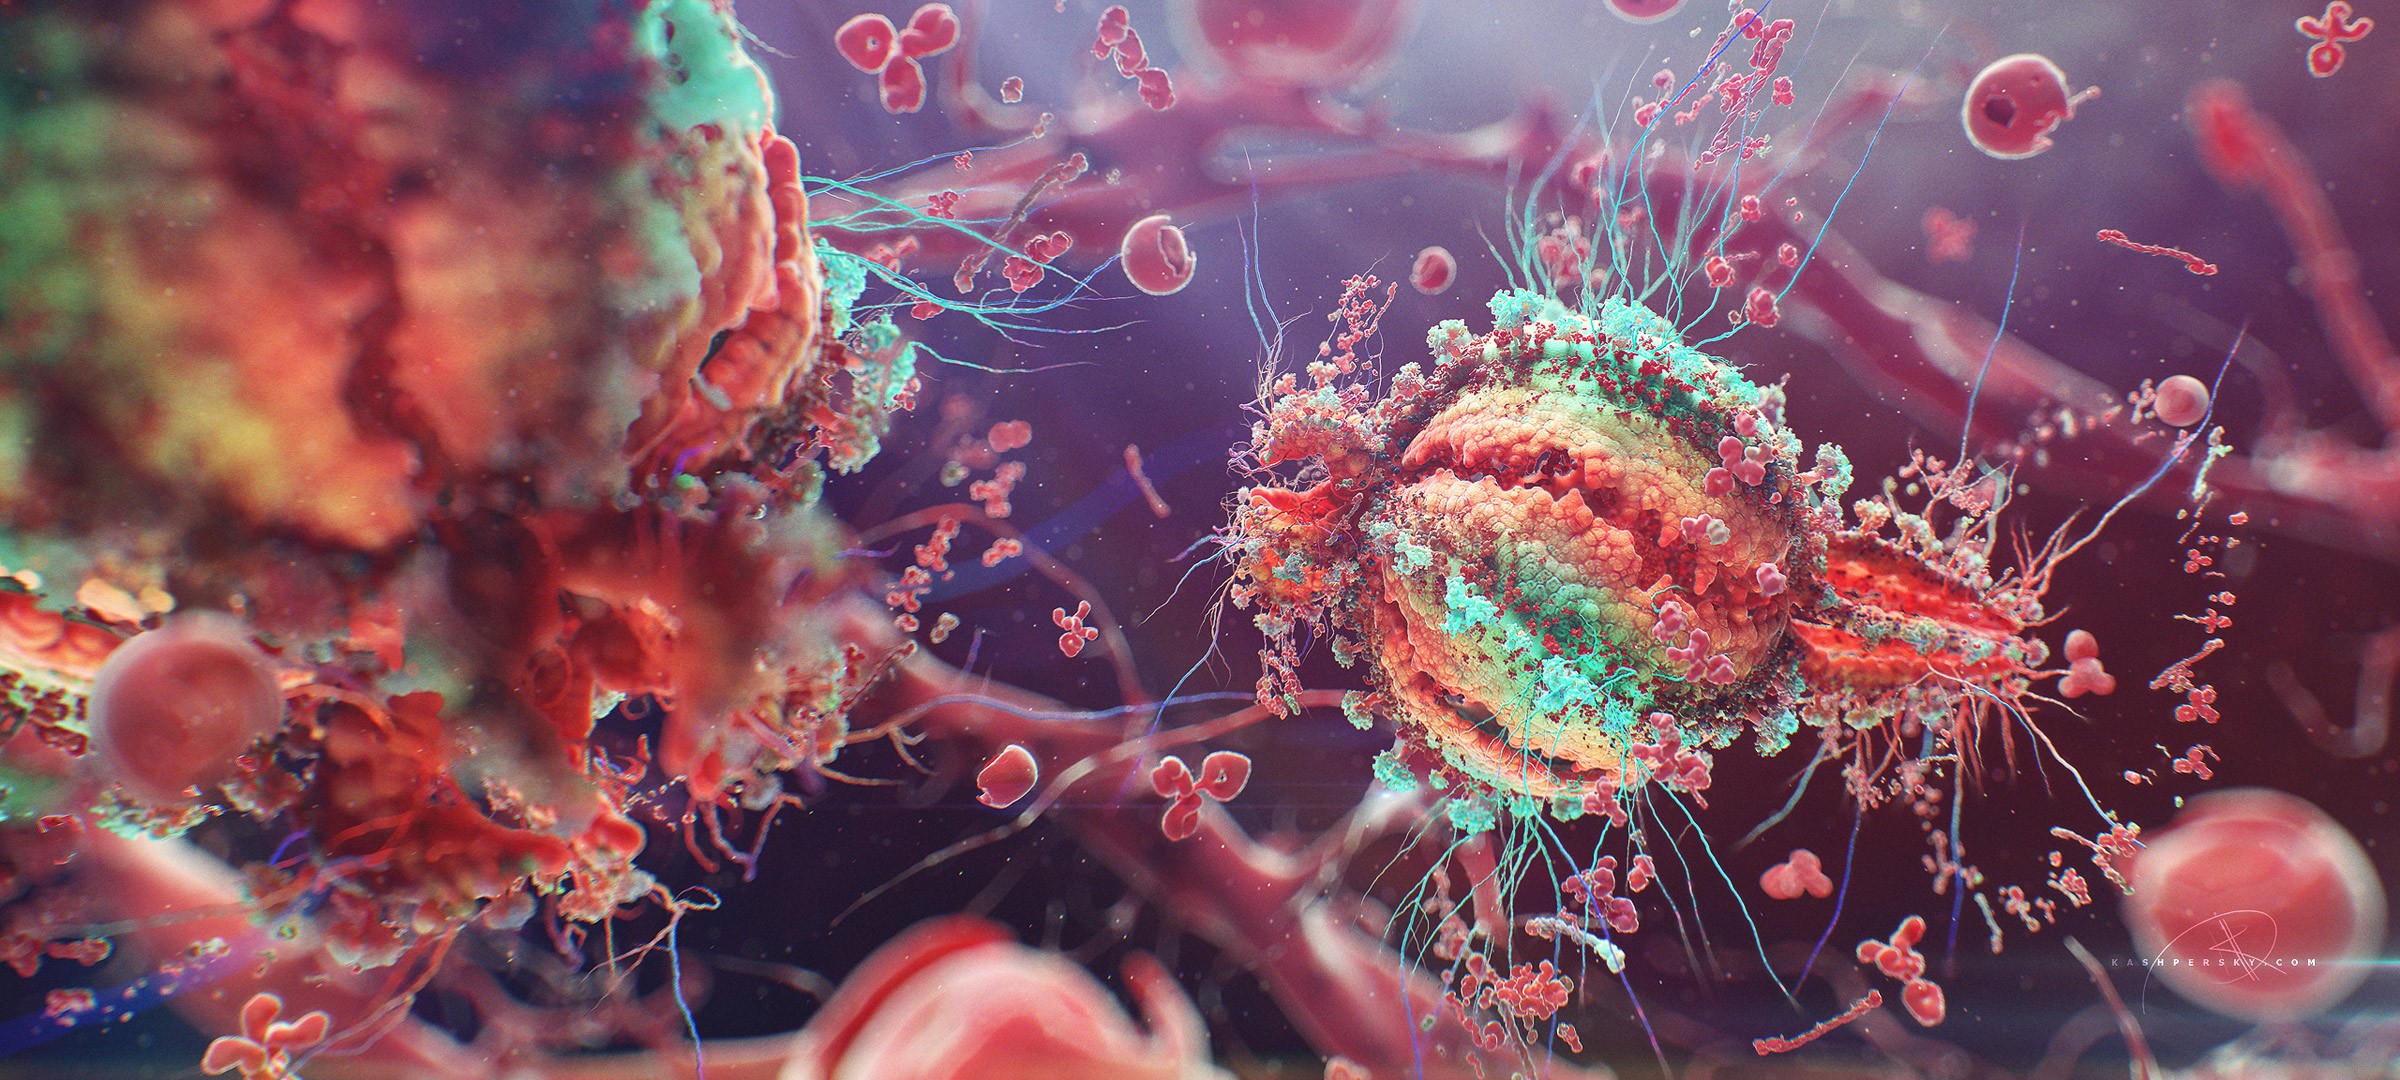 digital Art, Colorful, Macro, HIV, Cells, Disease Wallpaper